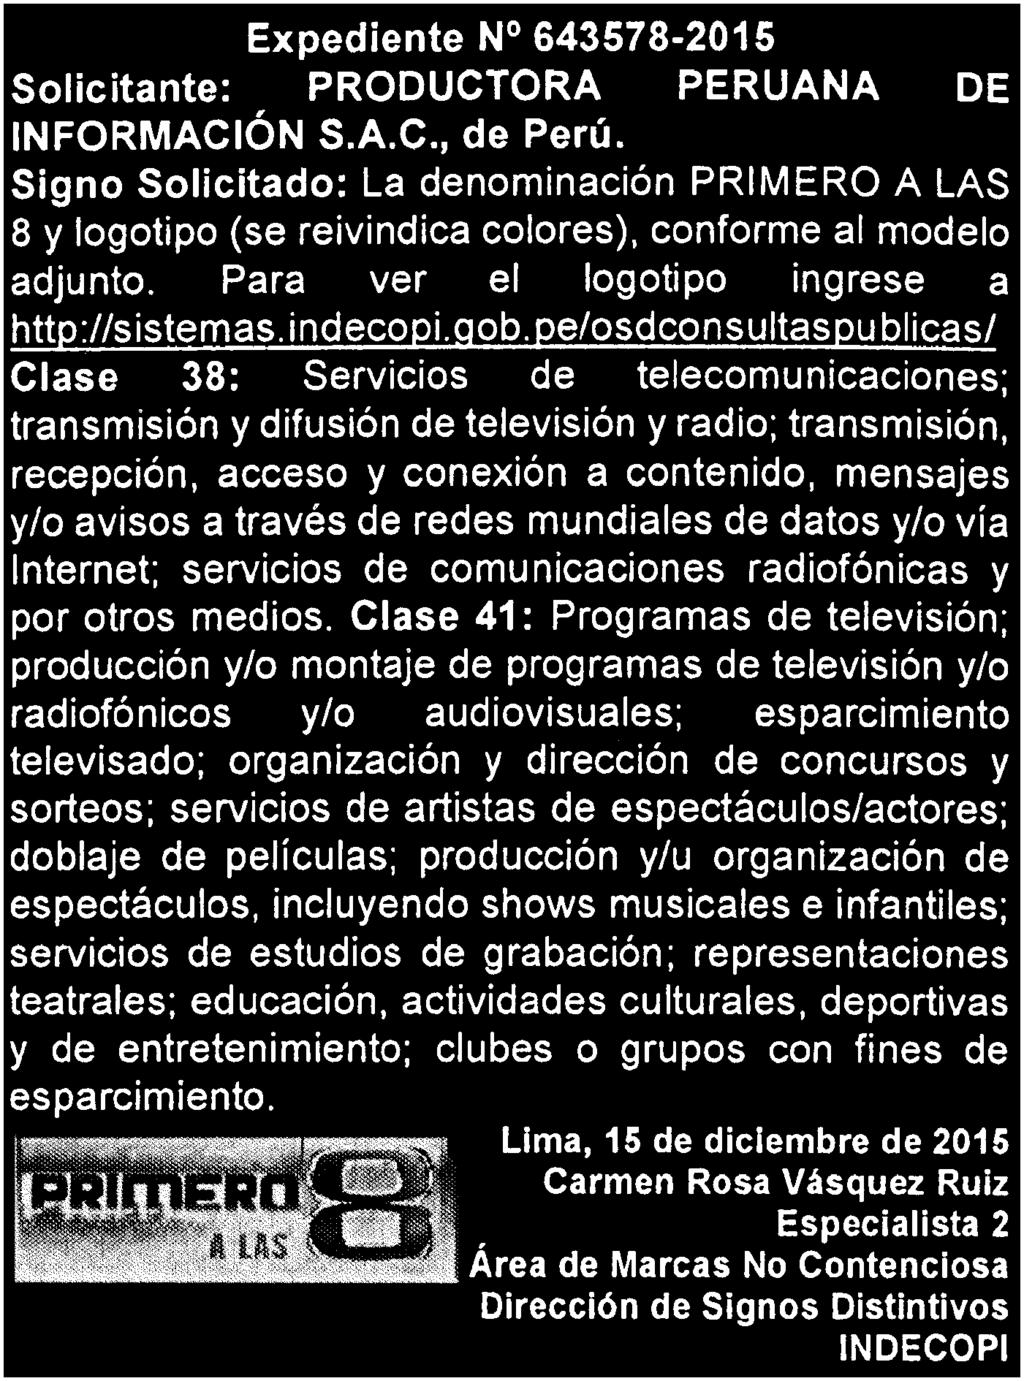 Lima, domingo 17 de enero de 2016 I EL PERUANO BOLETIN OFICIAL 9 EXPEDIENTE Nº 0637248-2015 Solicitante: PORTUGAL MORON PATRICIA CAROL, de Perú; VEGA